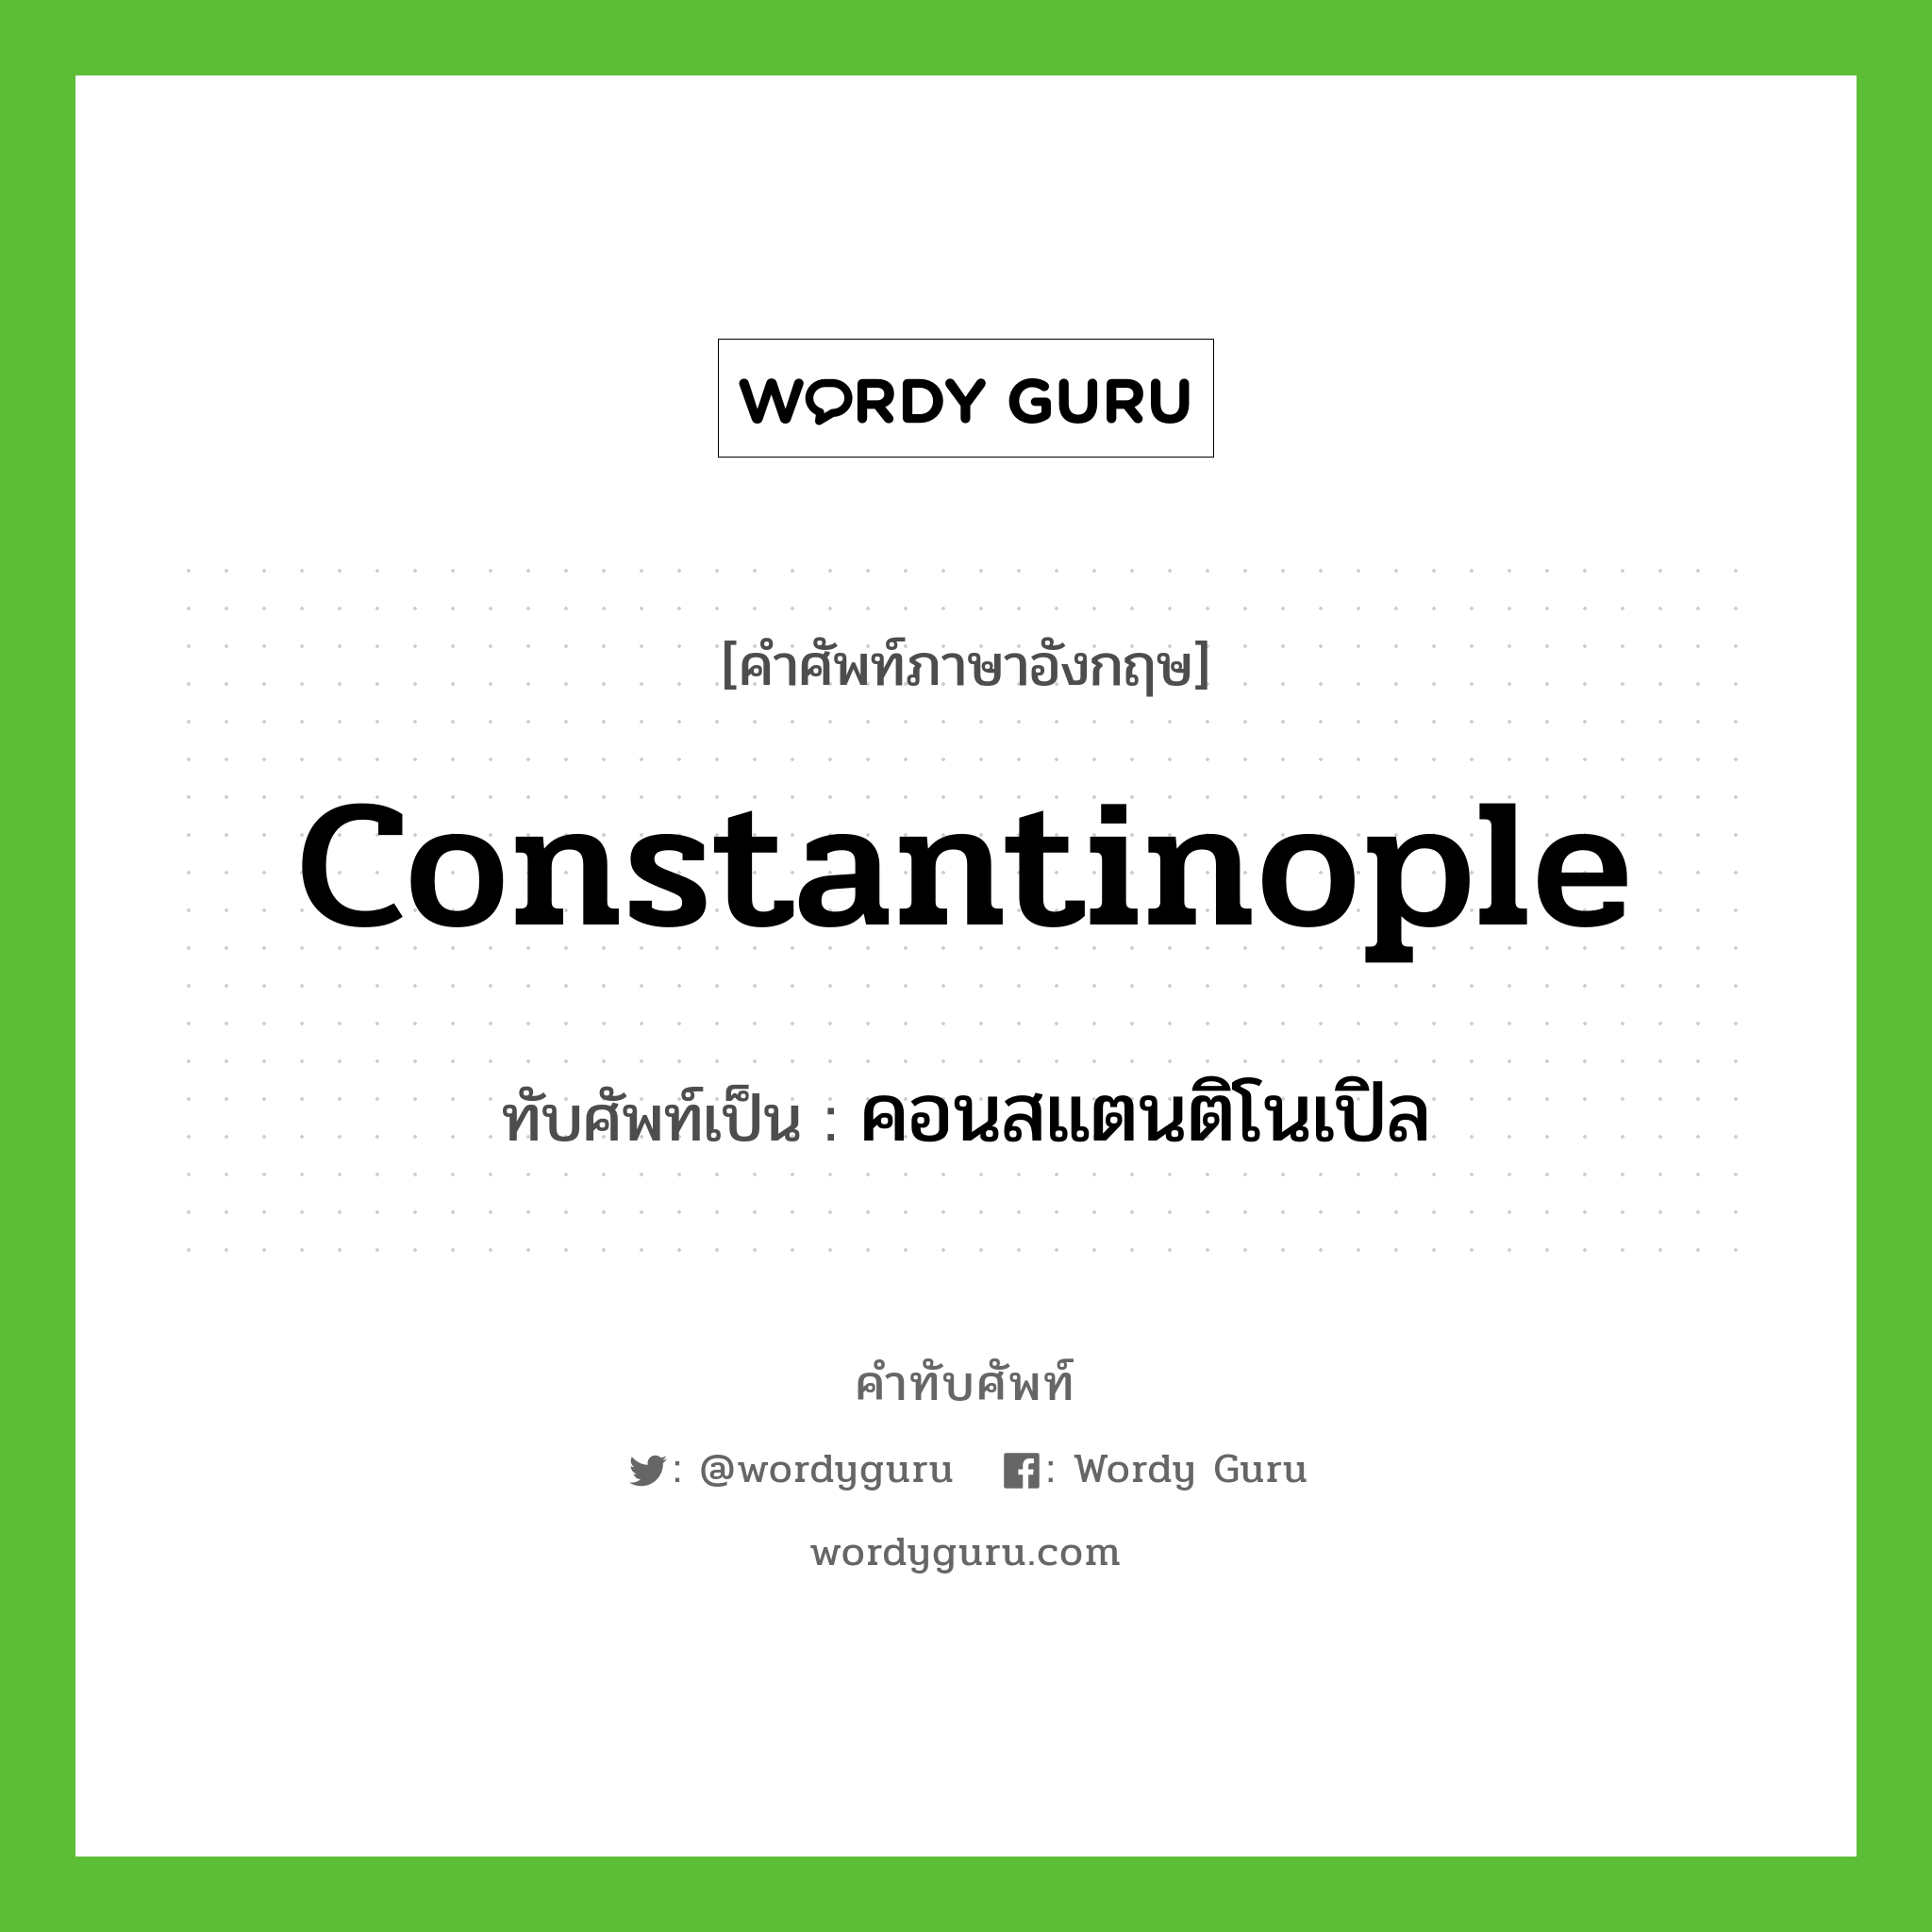 คอนสแตนติโนเปิล เขียนอย่างไร?, คำศัพท์ภาษาอังกฤษ คอนสแตนติโนเปิล ทับศัพท์เป็น Constantinople